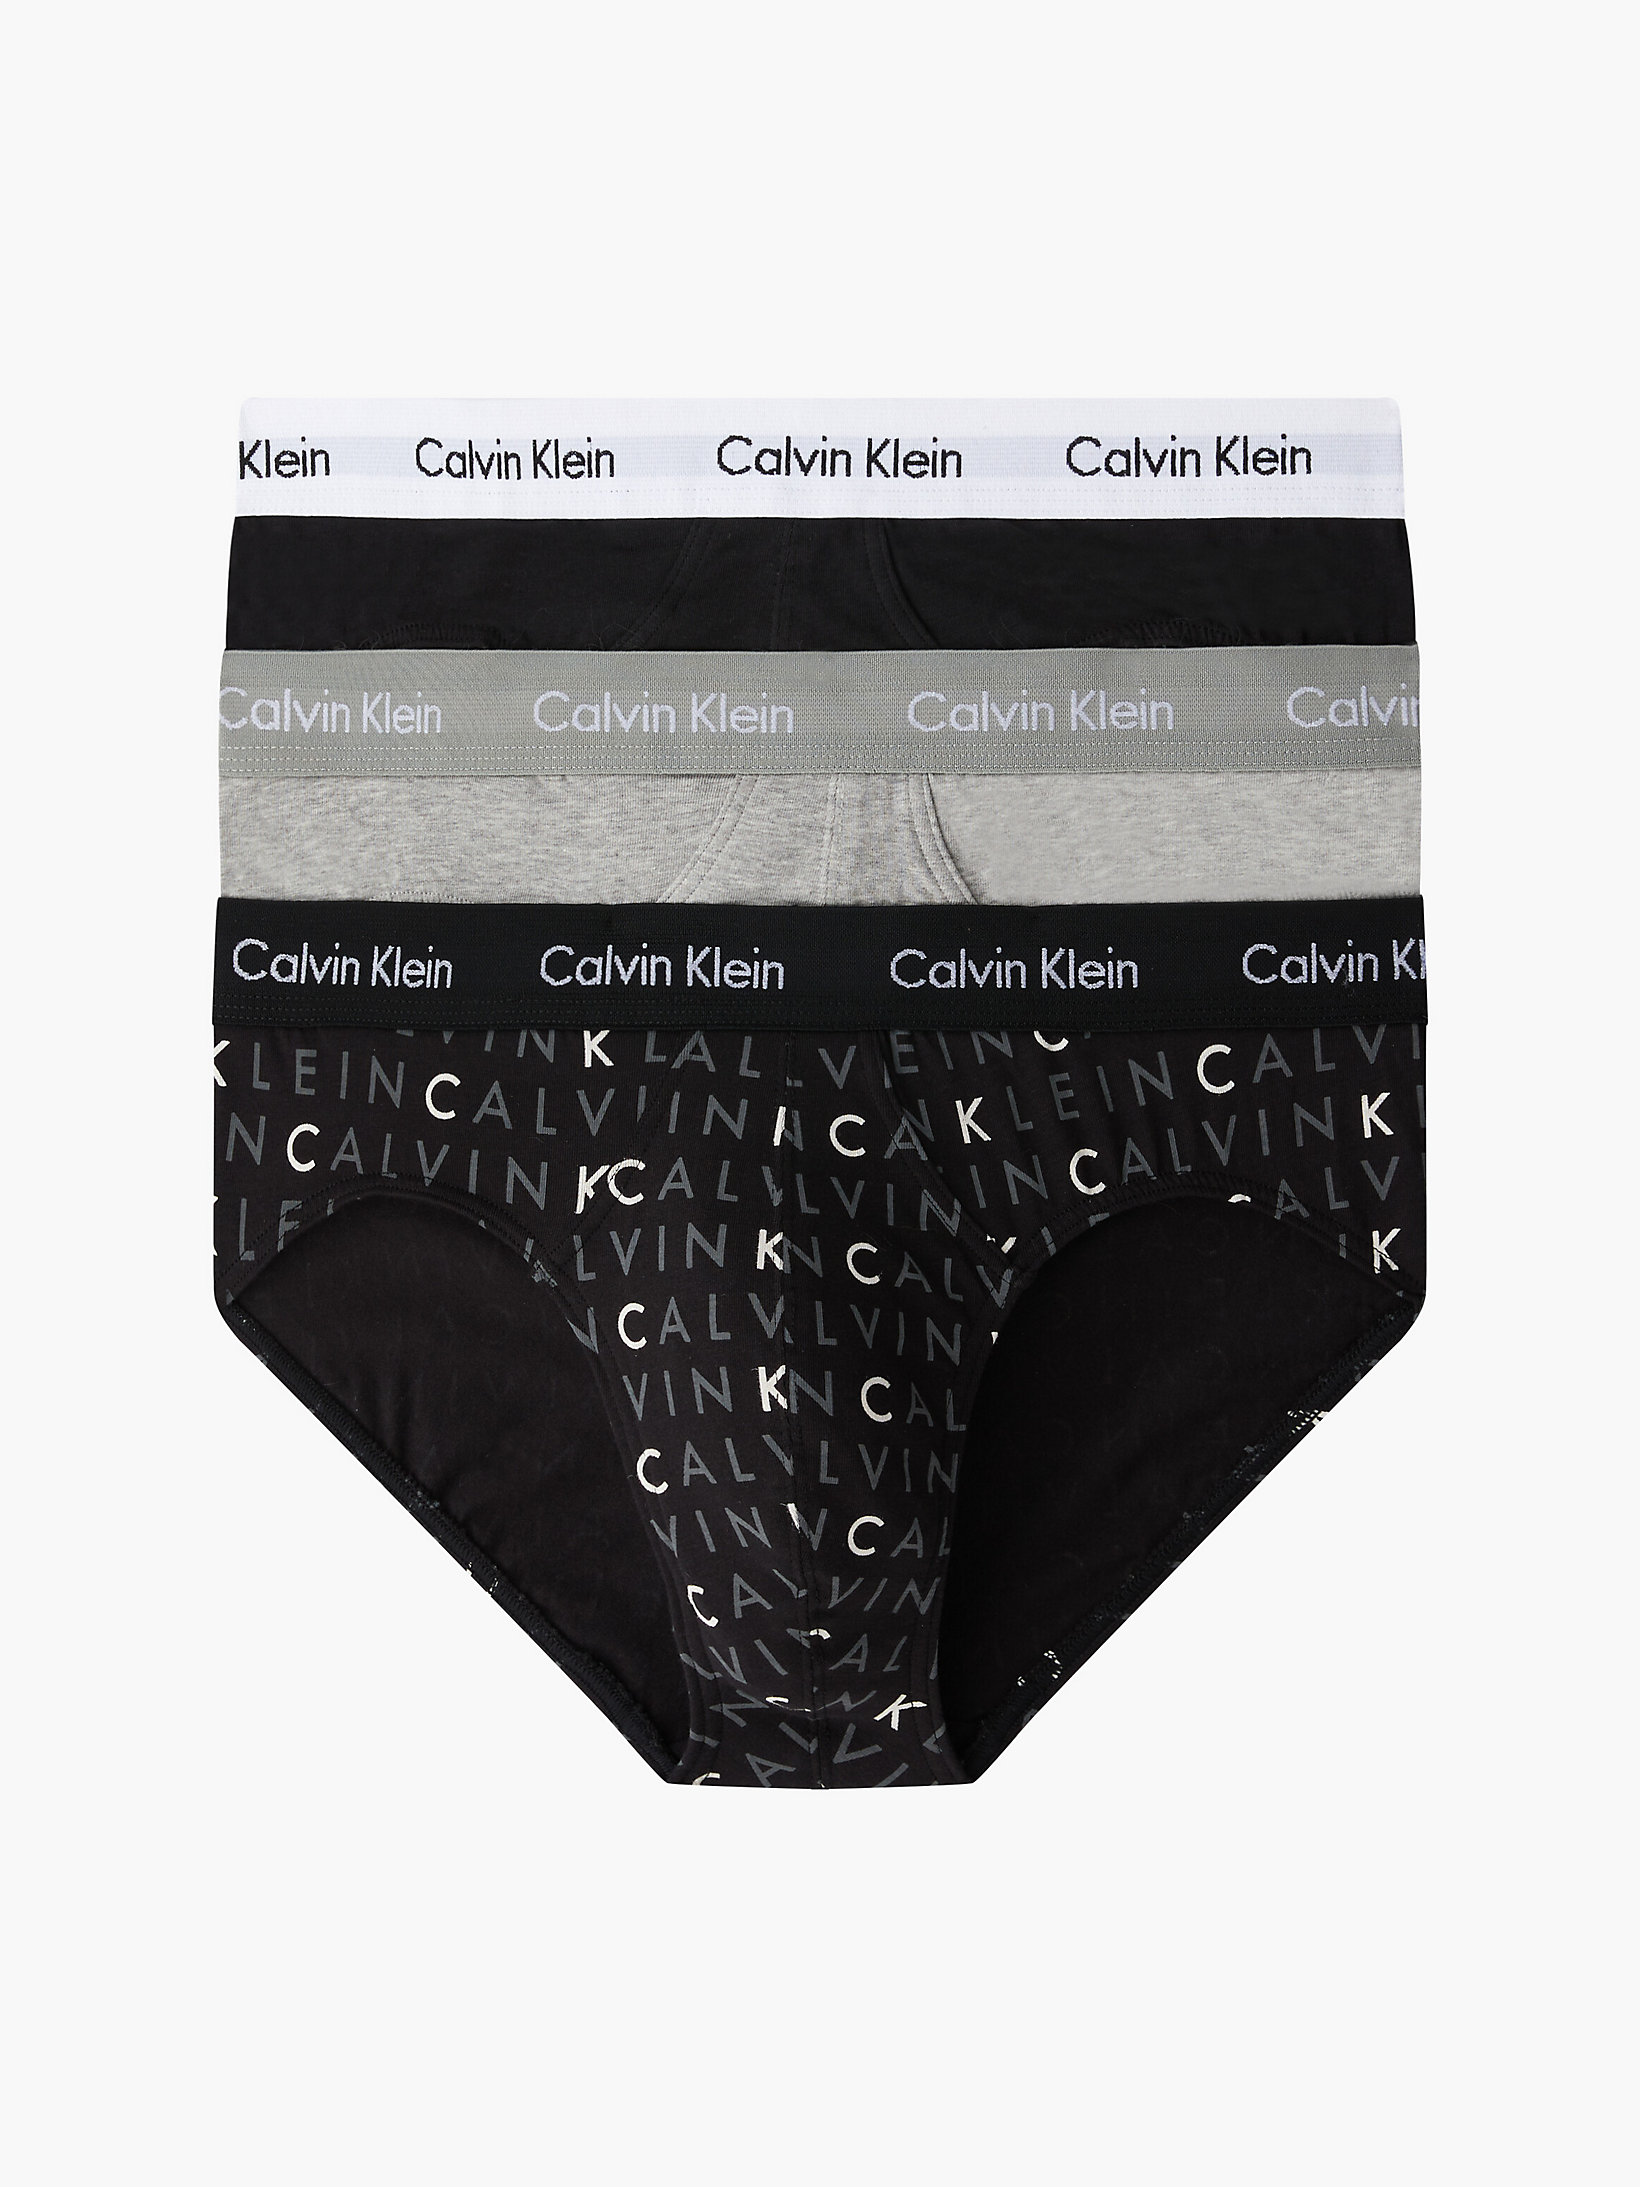 Calvin Klein Herren Slips im 3er Pack schwarz Gr. S von ansehen!